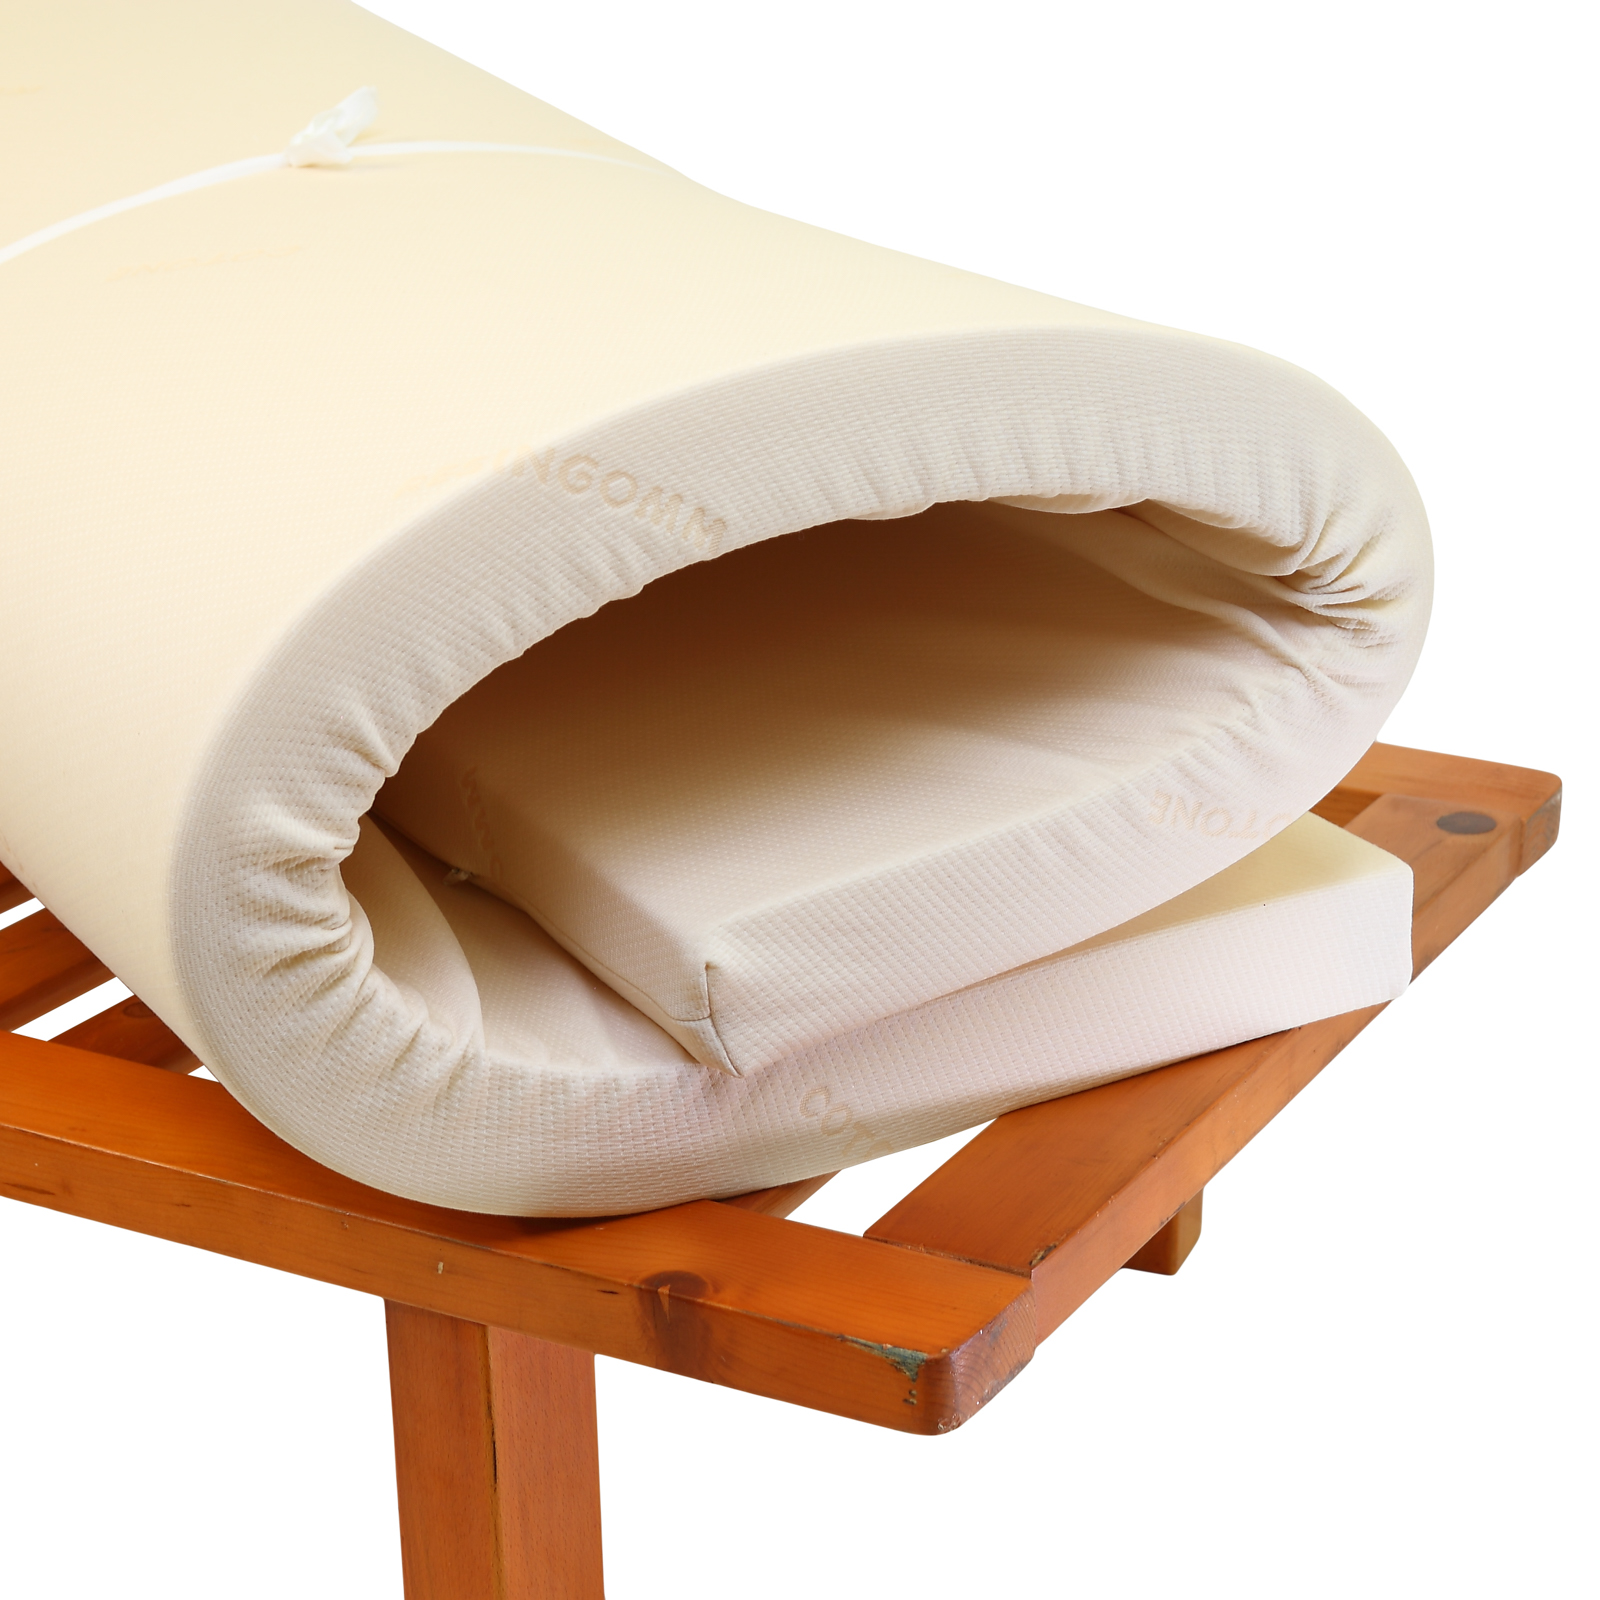 Materasso pieghevole per divano letto su misura in 30 minuti